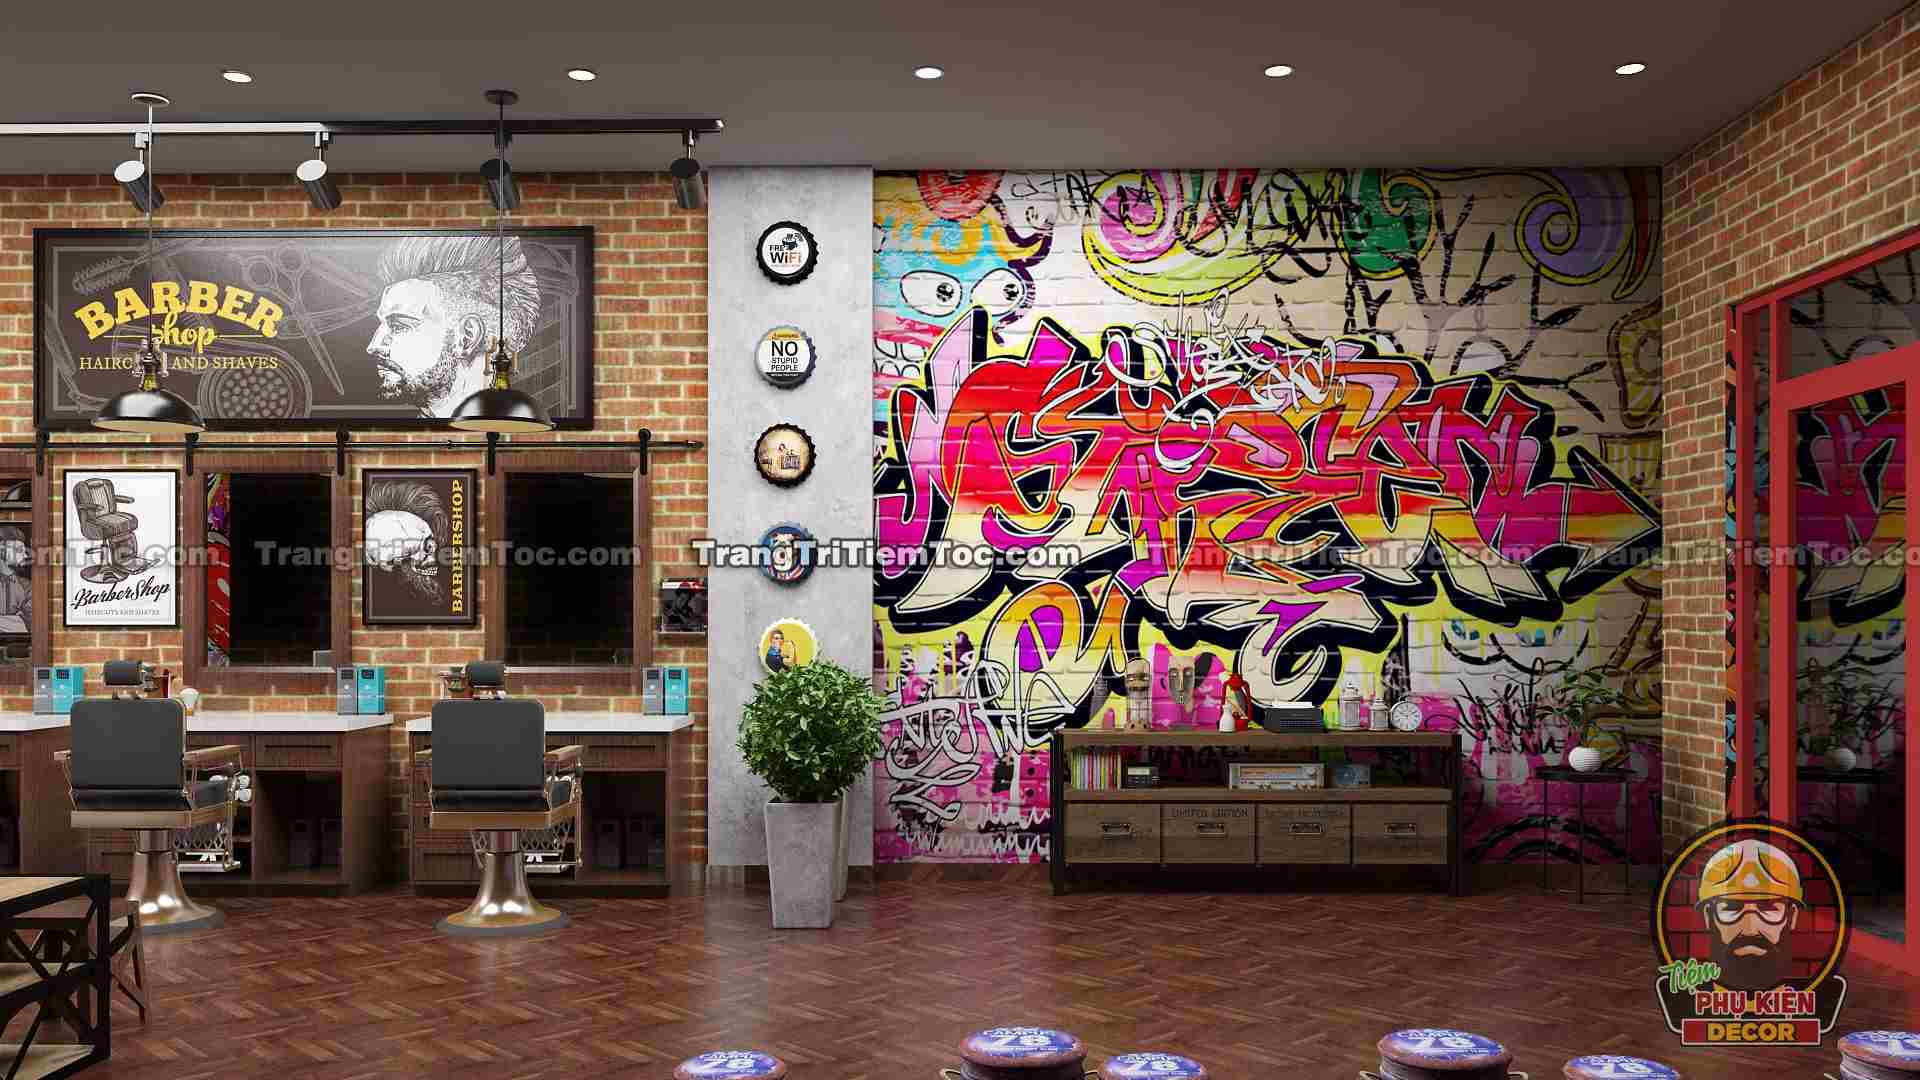 Trang trí Barber Shop, Tiệm tóc nam đẹp bằng tranh dán tường phong cách Graffiti